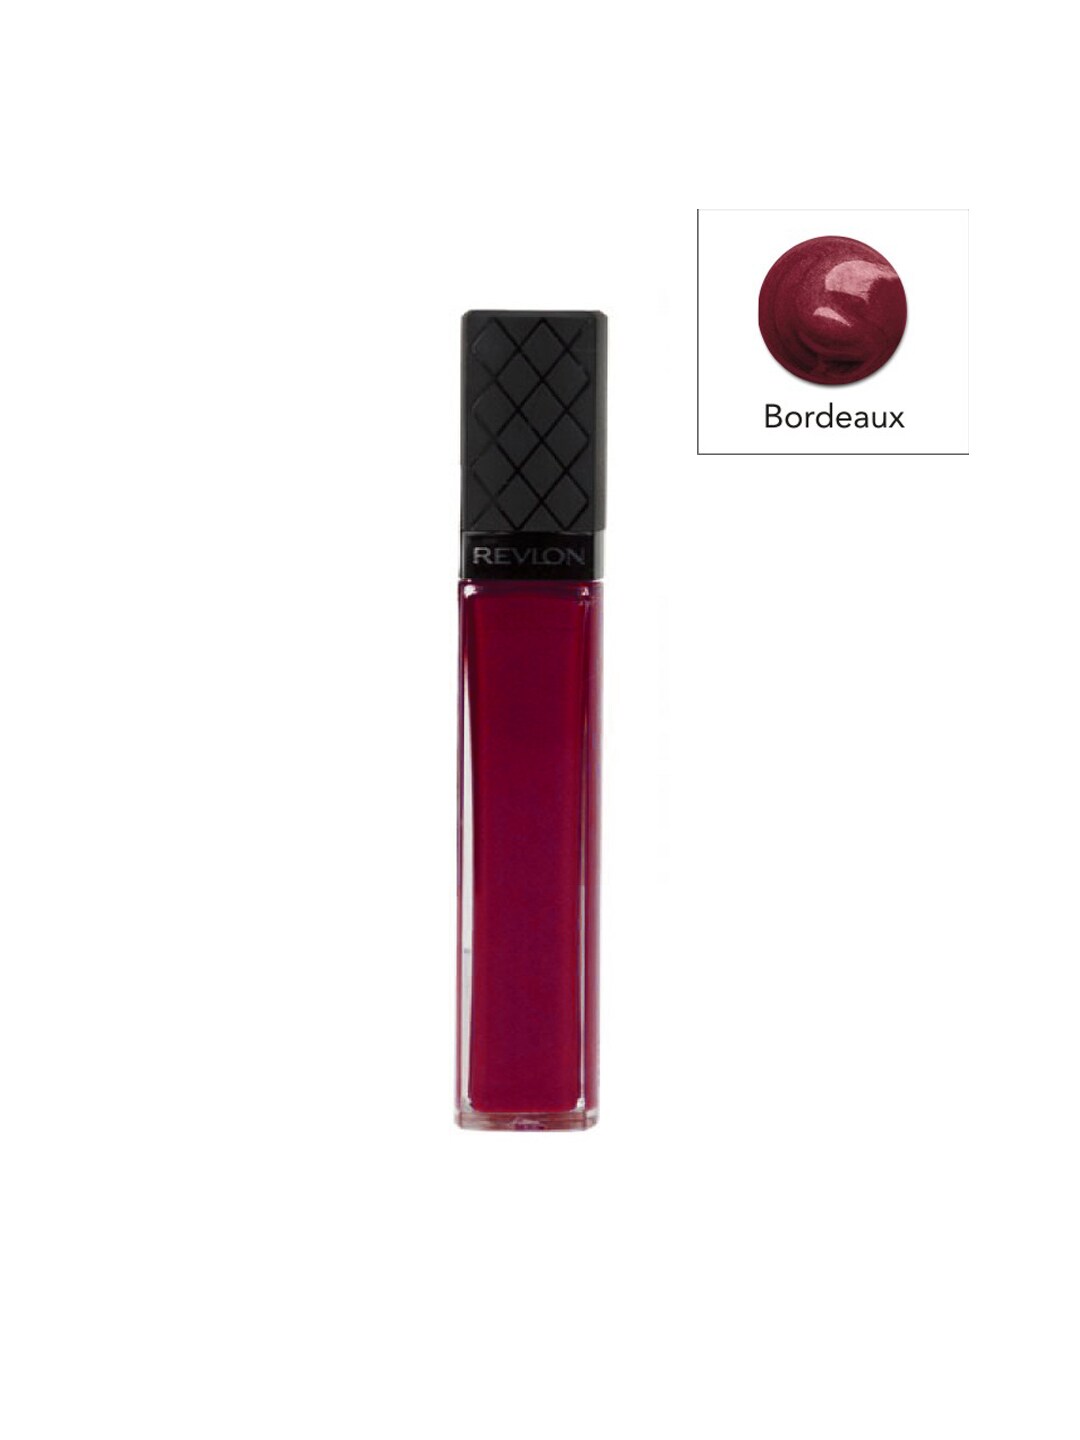 Revlon ColorBurst Bordeaux Lip Gloss 16